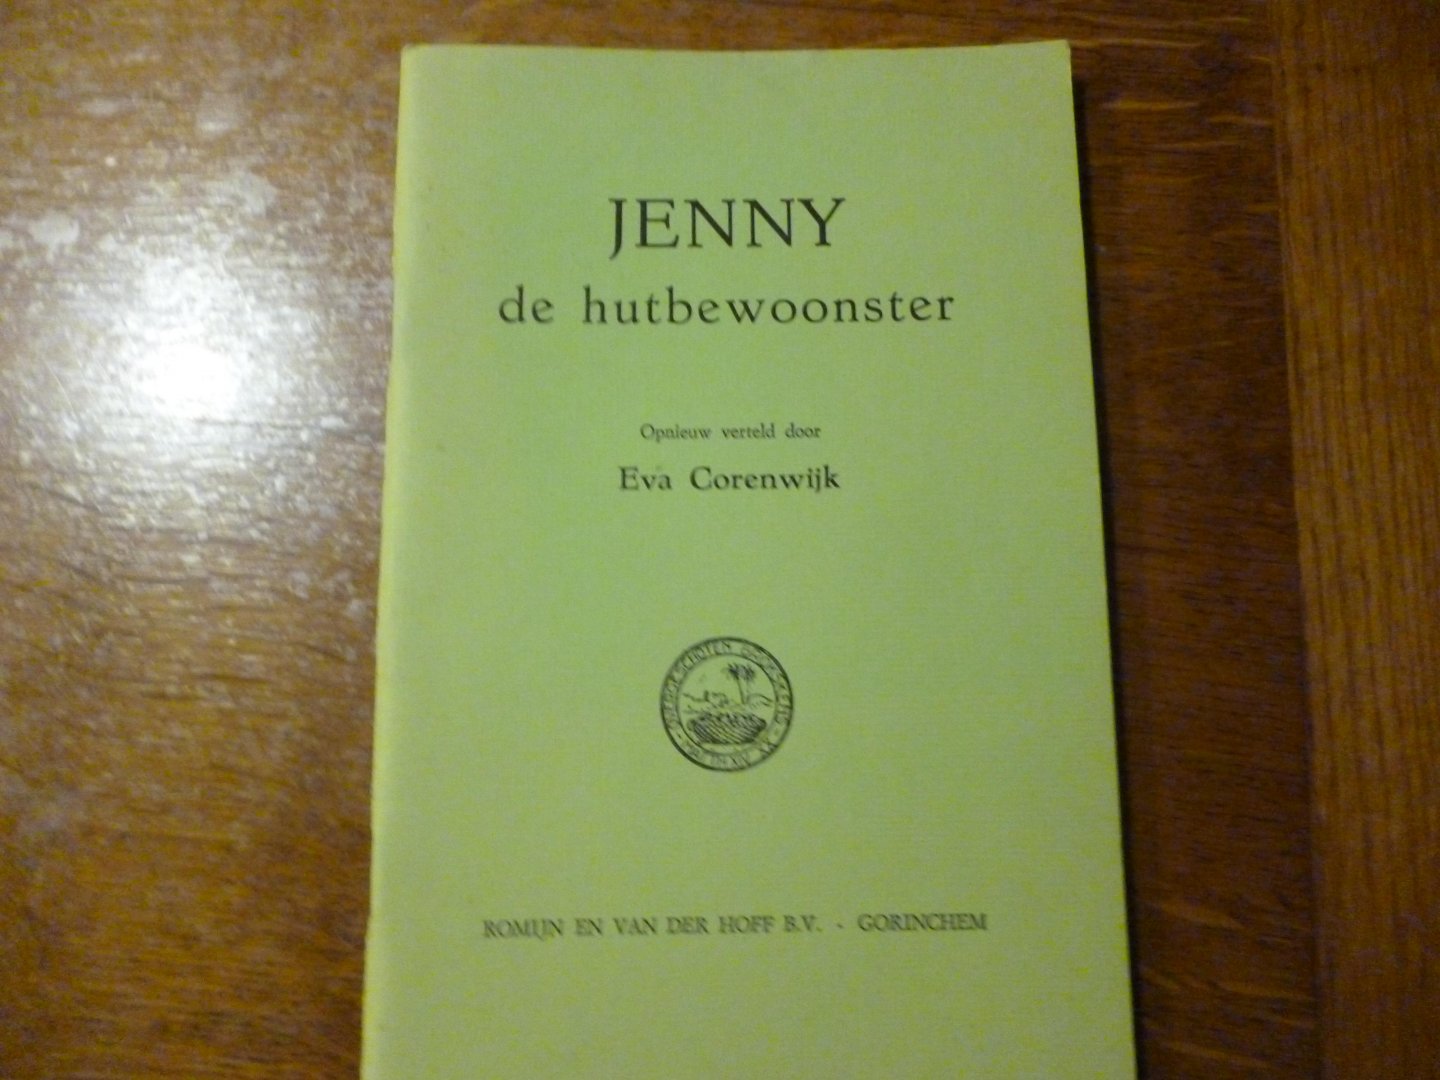 Corenwijk Eva - Jenny de hutbewoonster